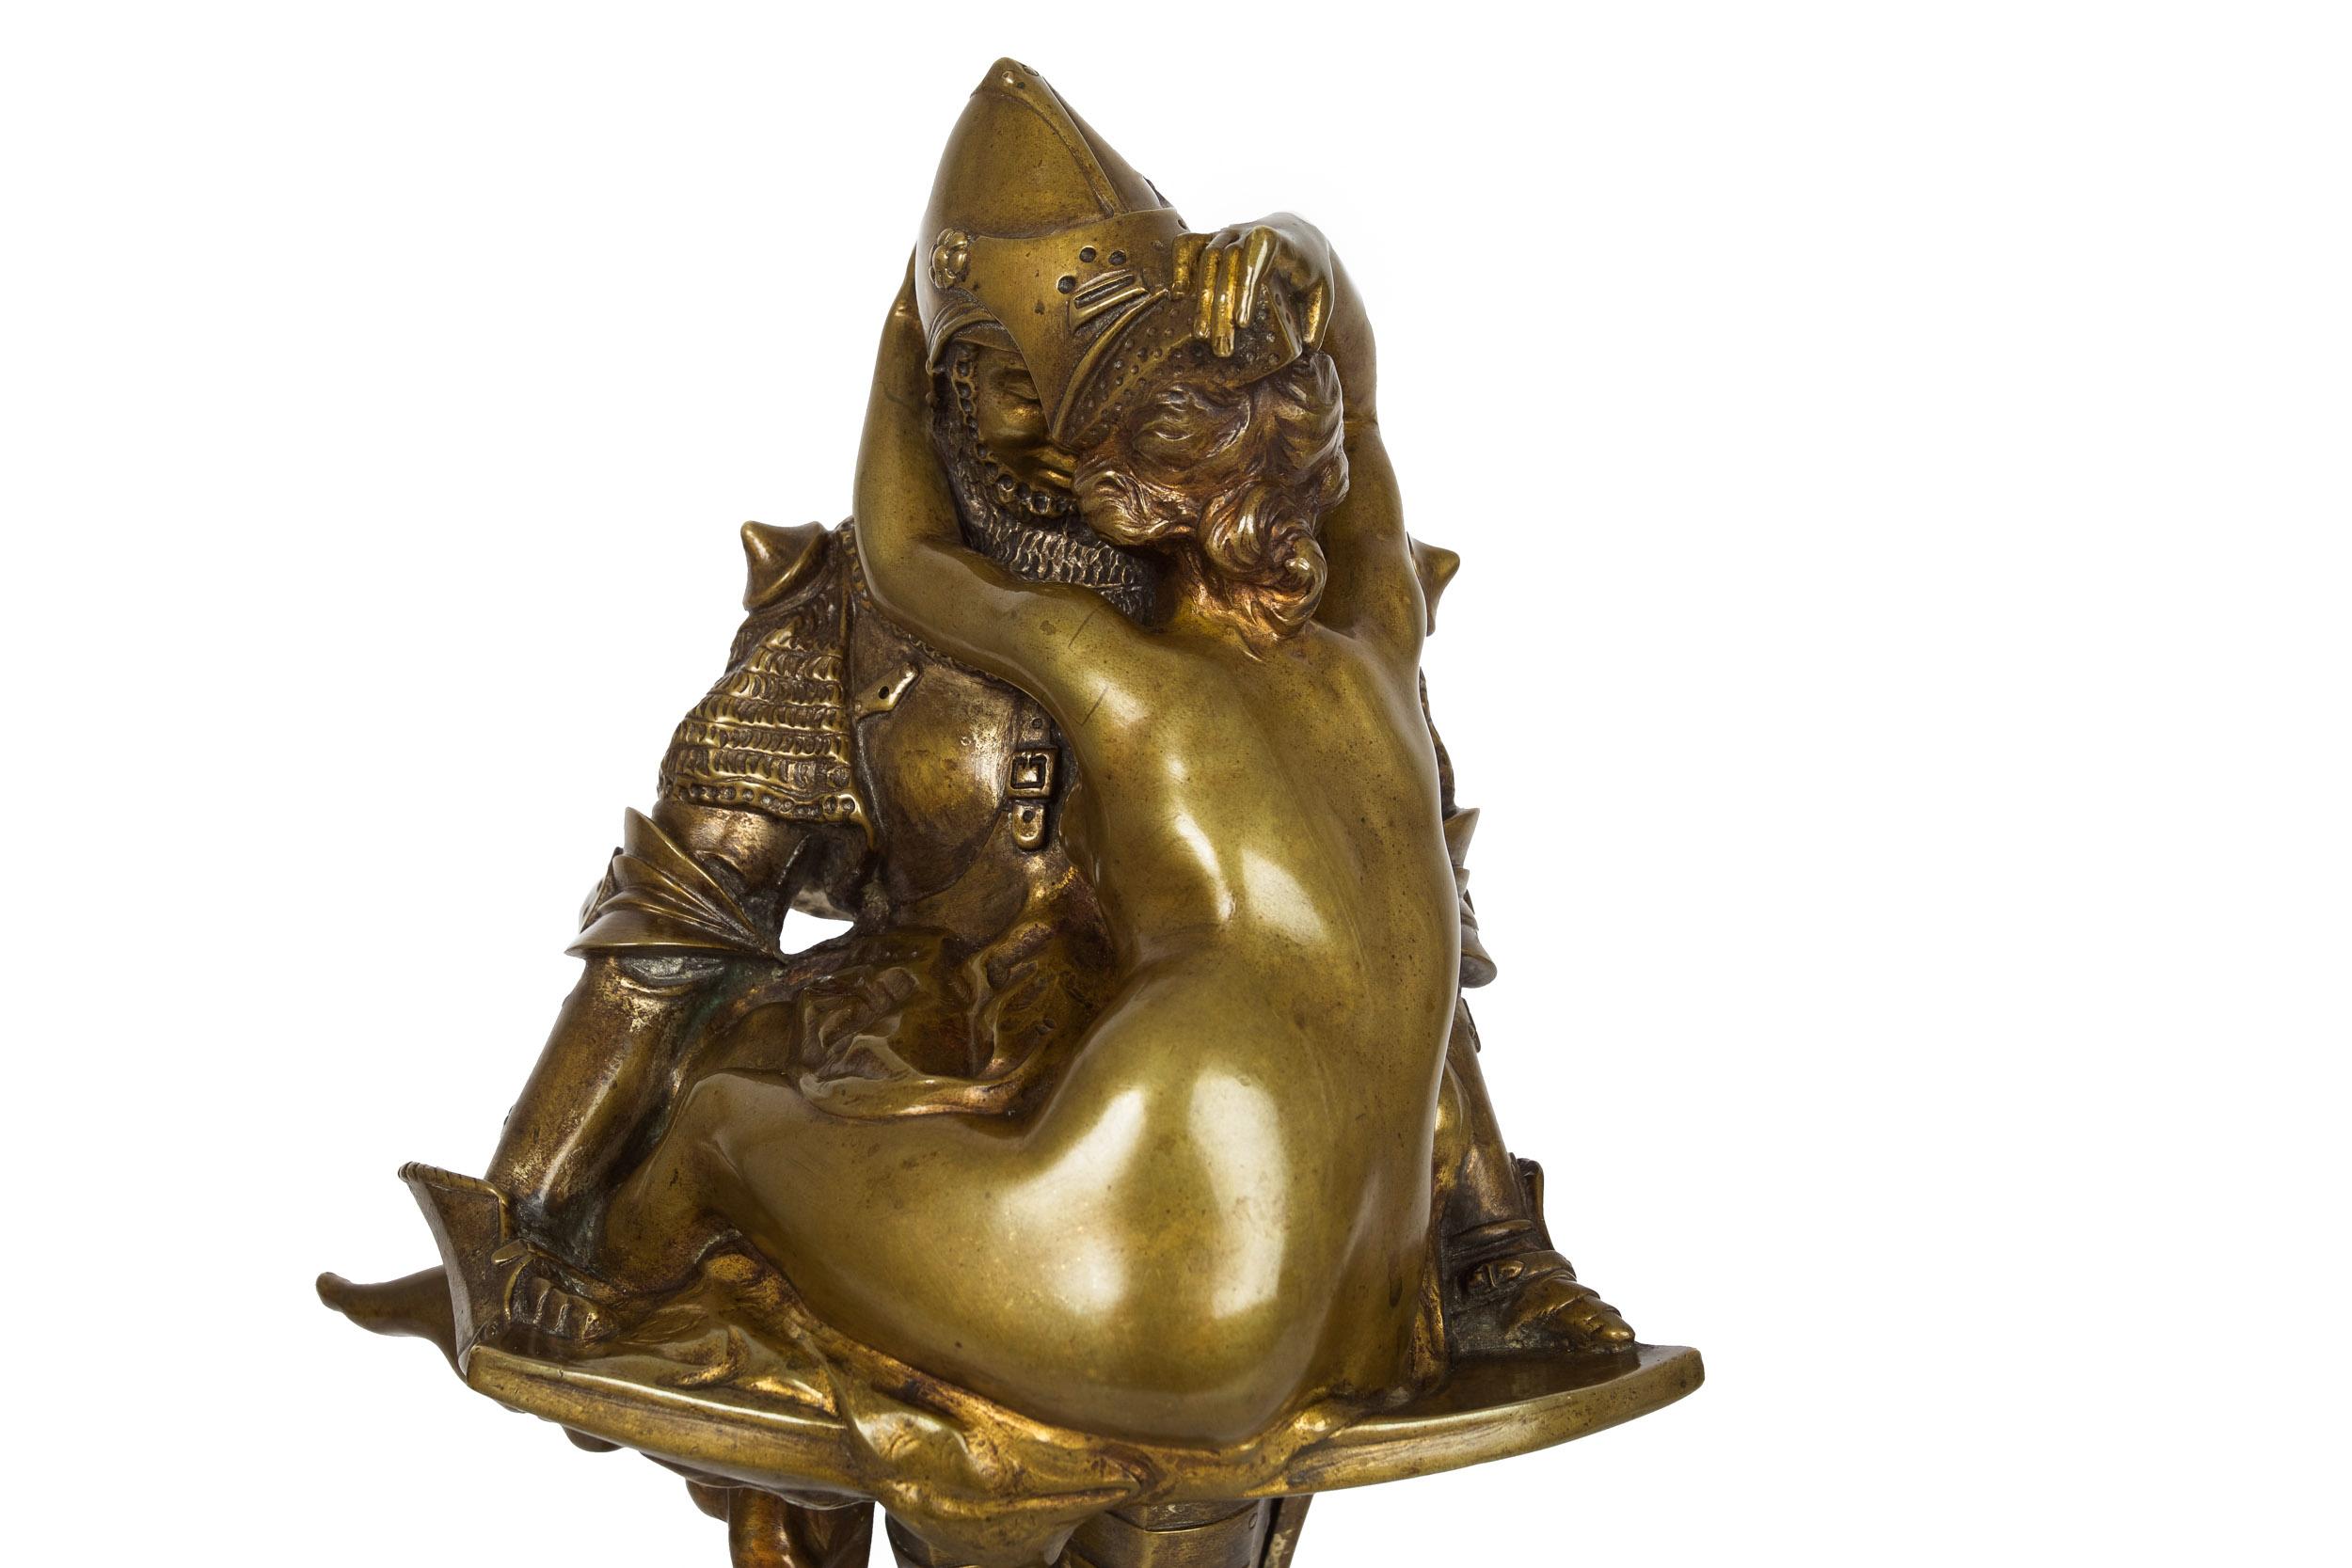 20th Century French Antique Art Nouveau Bronze Sculpture of Knight by François A. Clémencin For Sale